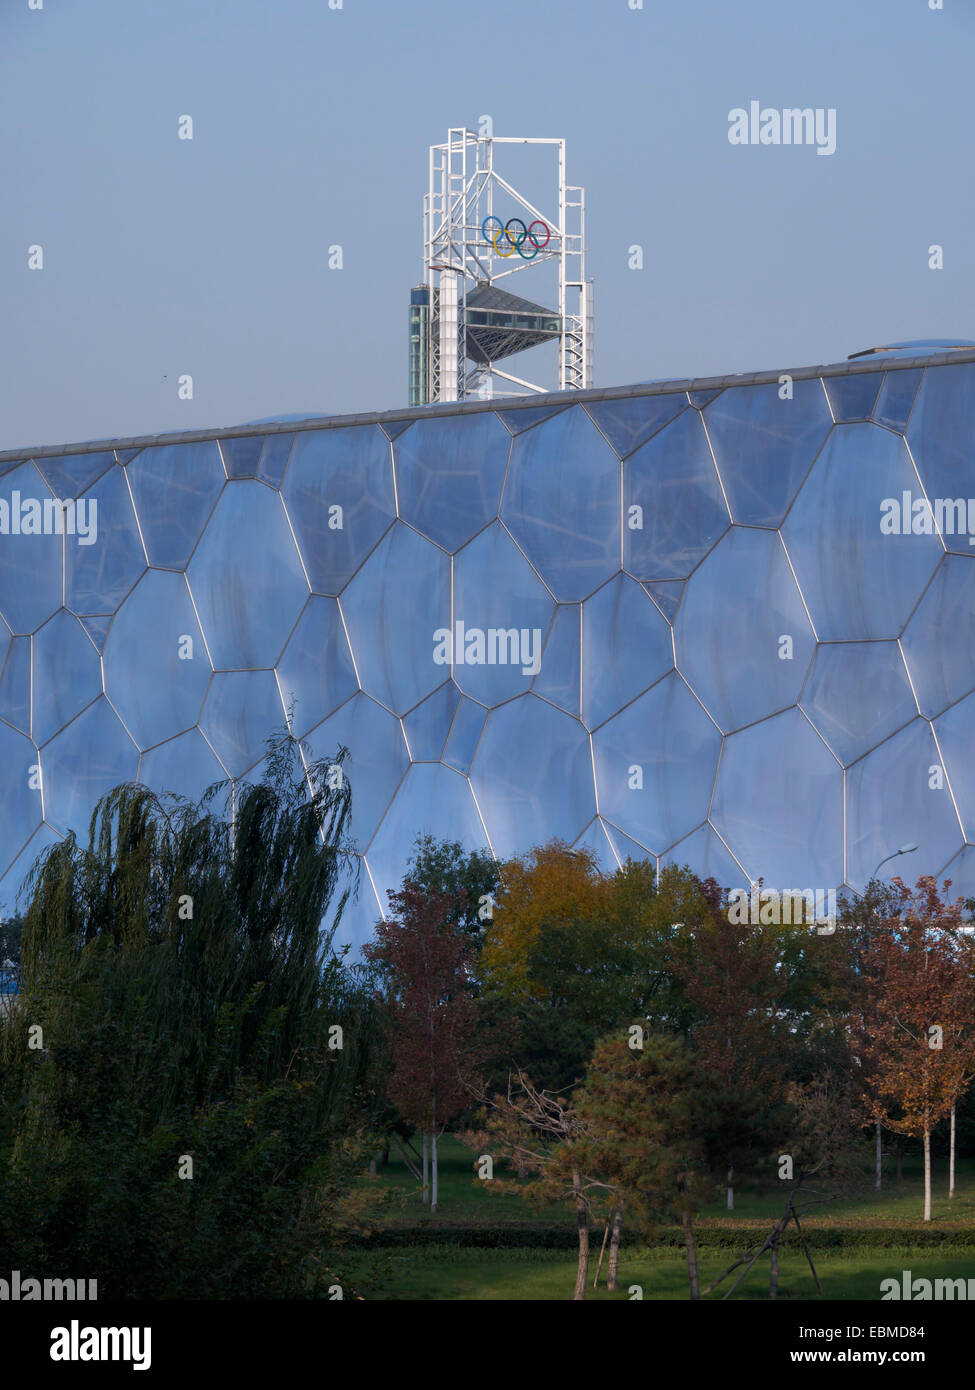 Centre national de natation de Pékin aux Jeux Olympiques de 2008 - natation lieu - Cube d'eau Banque D'Images